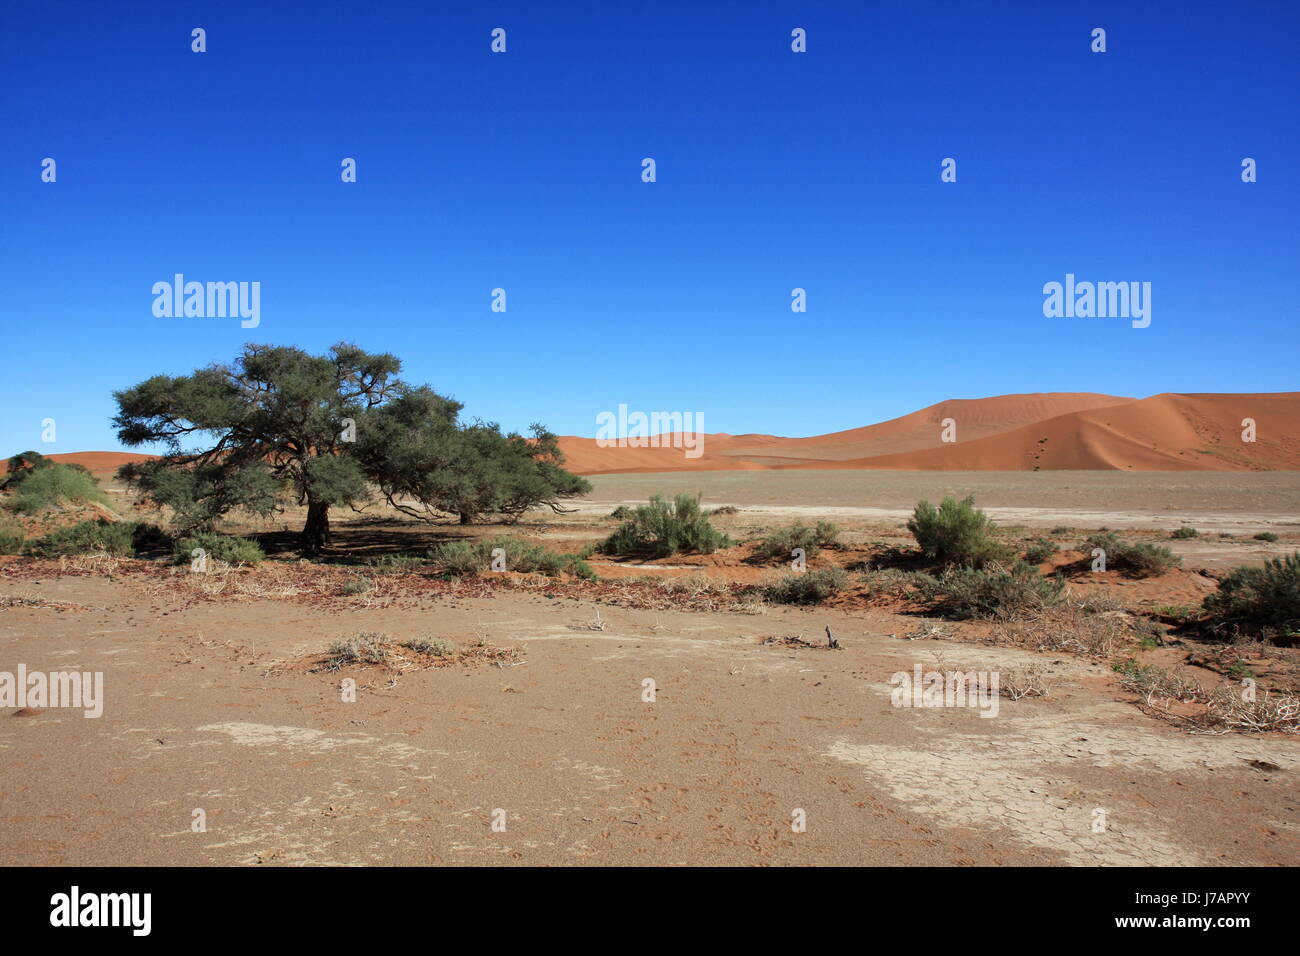 La Namibie Afrique désert tree desert sand dunes de sable du désert voyage arbre arbres Banque D'Images